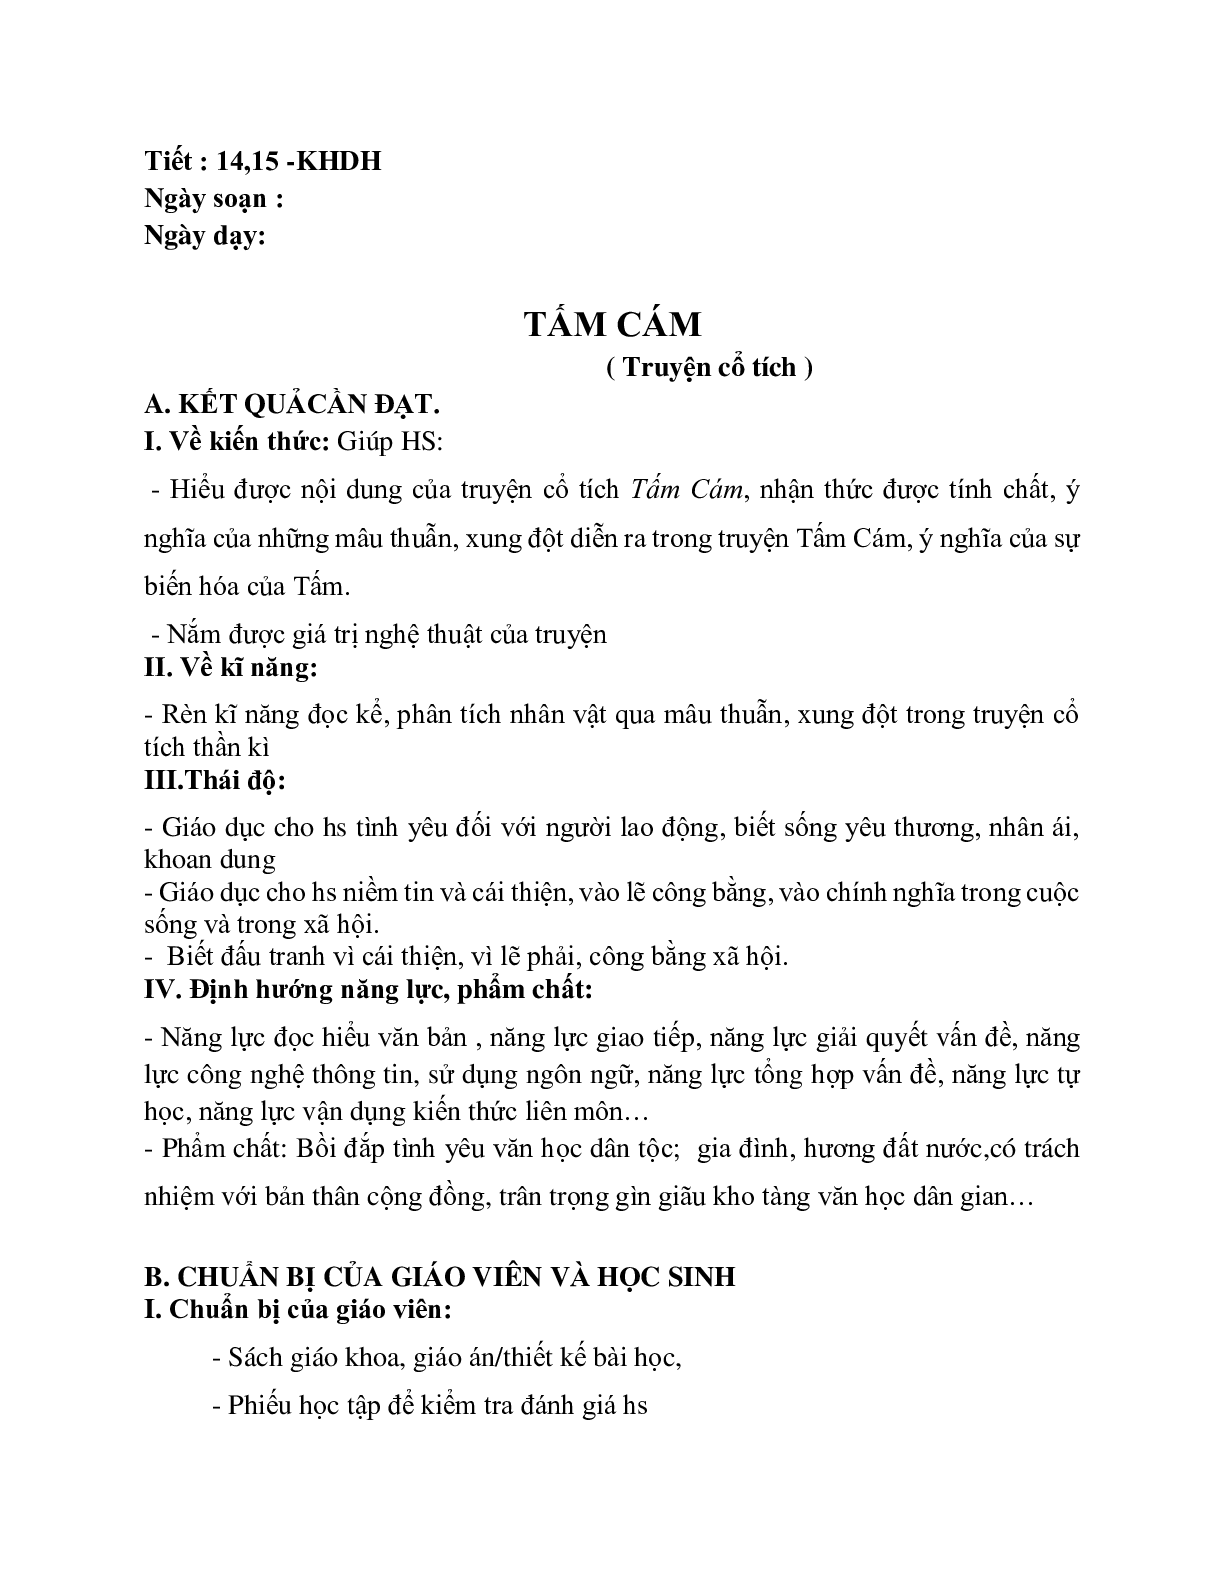 Giáo án ngữ văn lớp 10 Tiết 14, 15: Tấm Cám (trang 1)